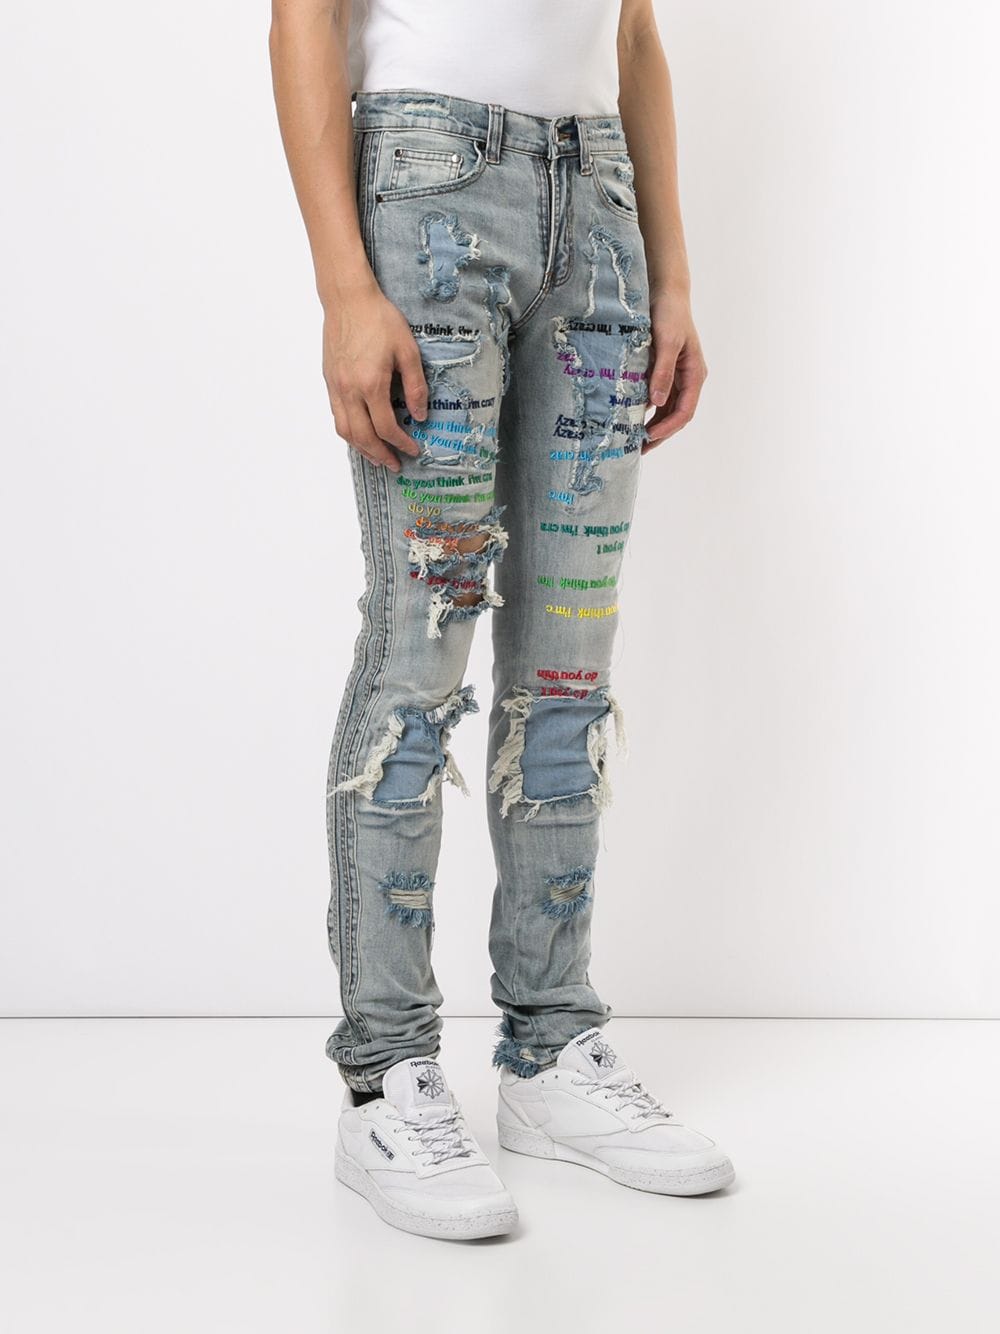 фото Ev Brovado джинсы скинни с прорезями и принтом